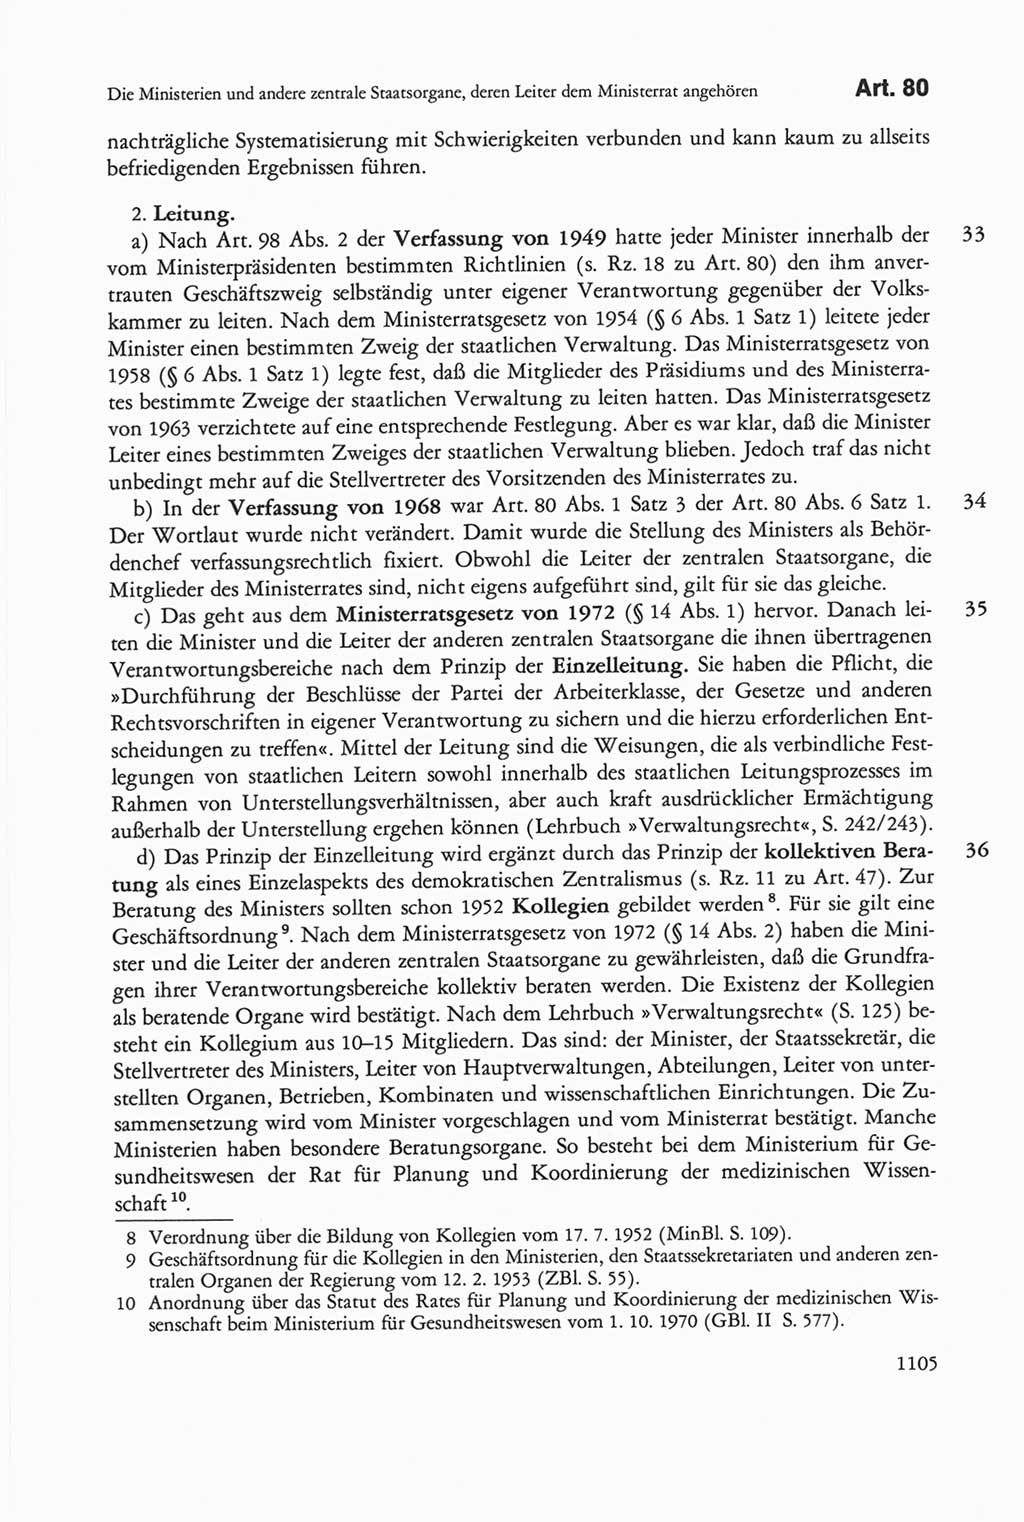 Die sozialistische Verfassung der Deutschen Demokratischen Republik (DDR), Kommentar 1982, Seite 1105 (Soz. Verf. DDR Komm. 1982, S. 1105)